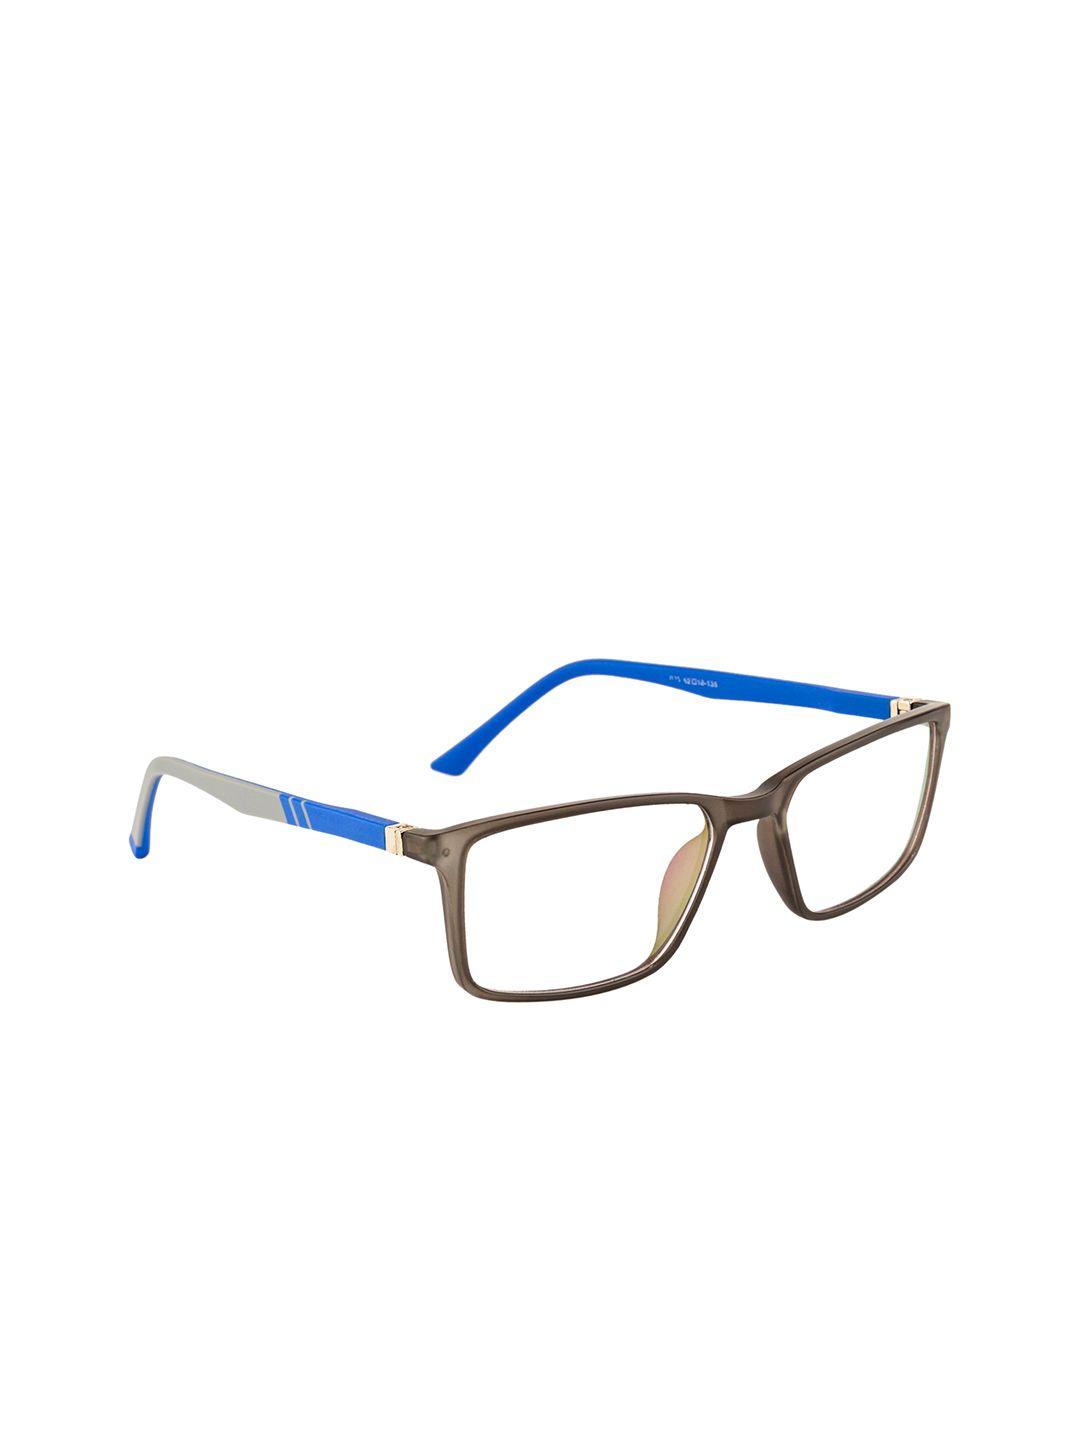 gold berg unisex grey & blue full rim wayfarer frames eyeglasses